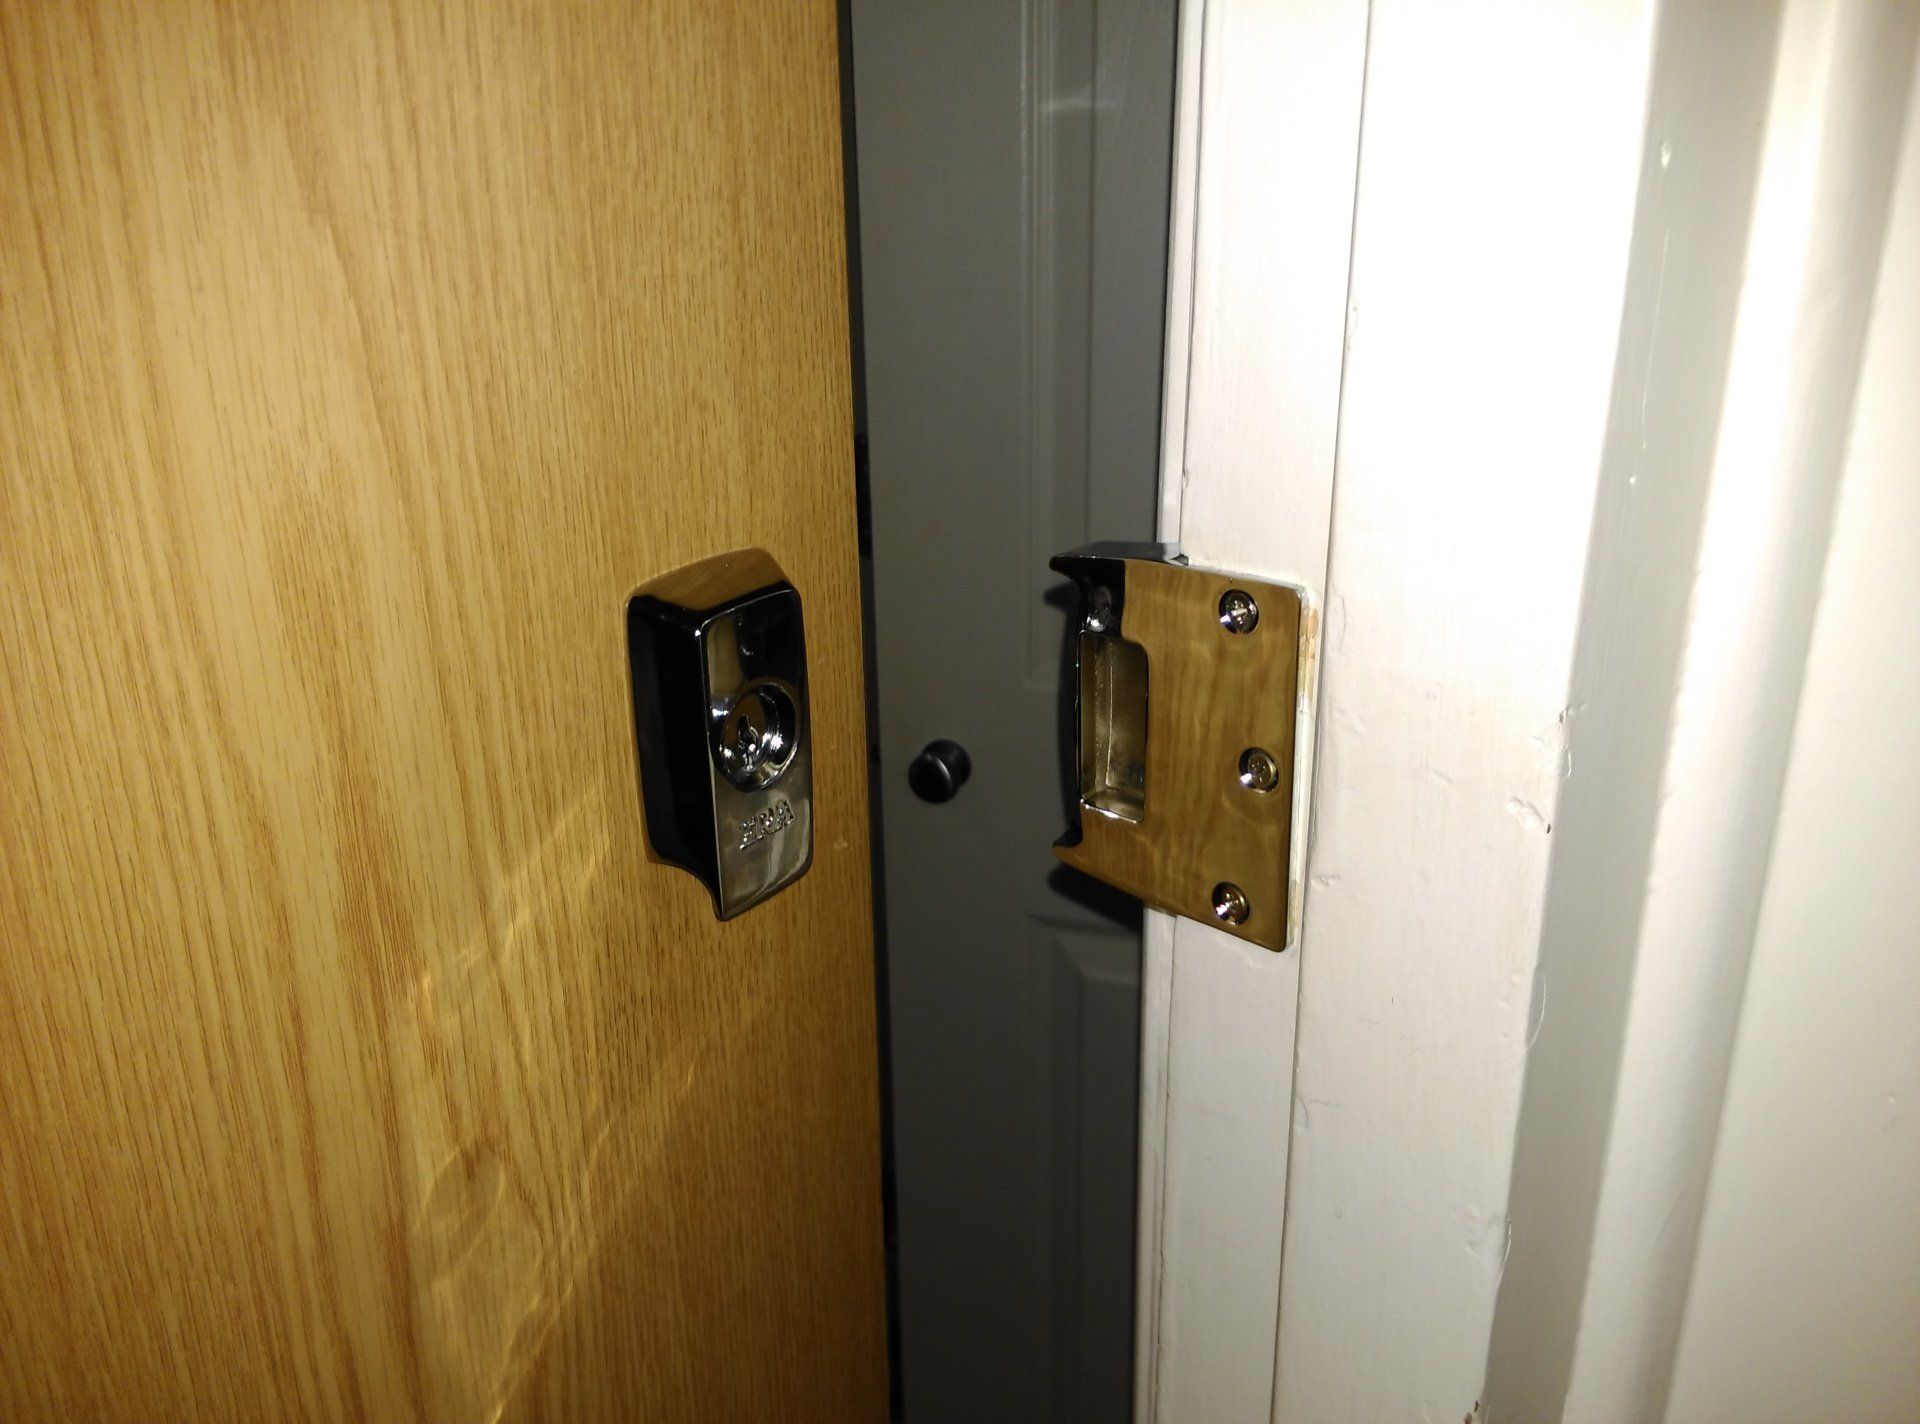 British standard front door locks